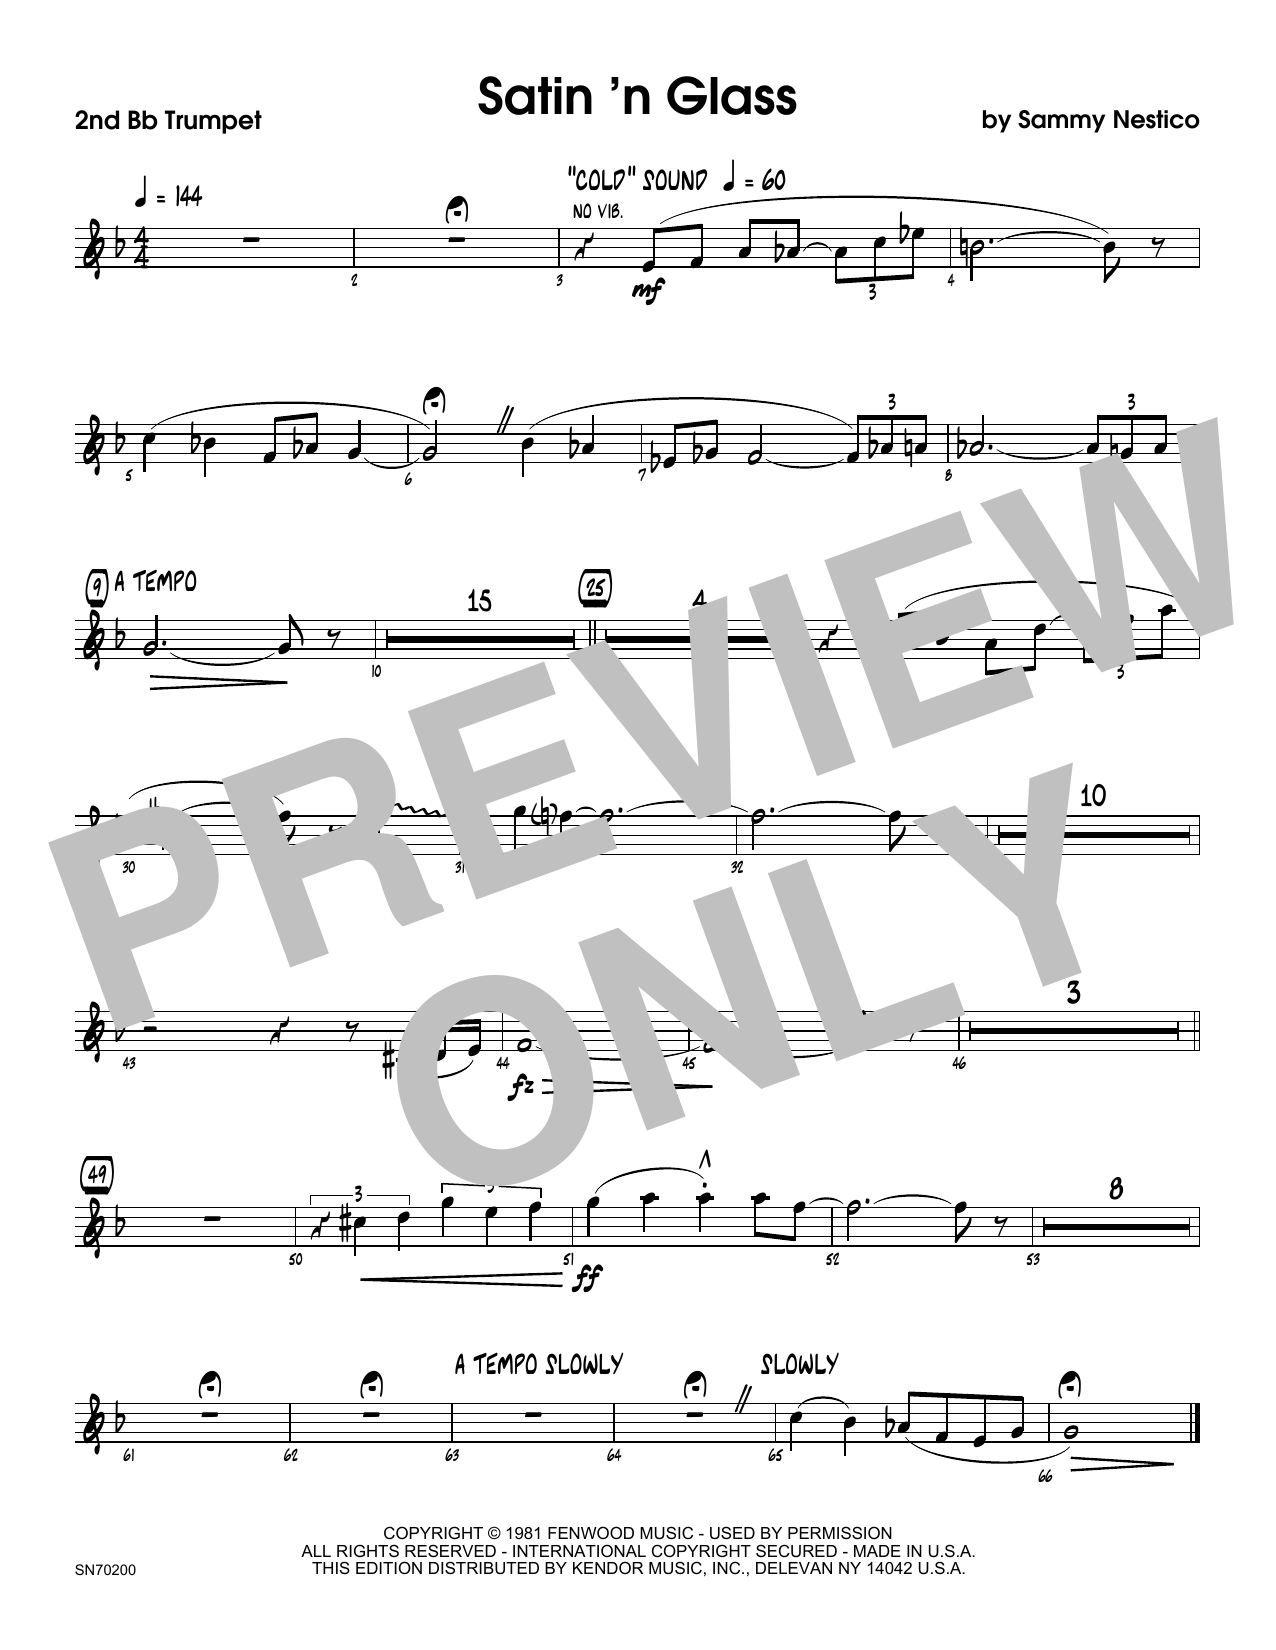 Download Sammy Nestico Satin 'n Glass - 2nd Bb Trumpet Sheet Music